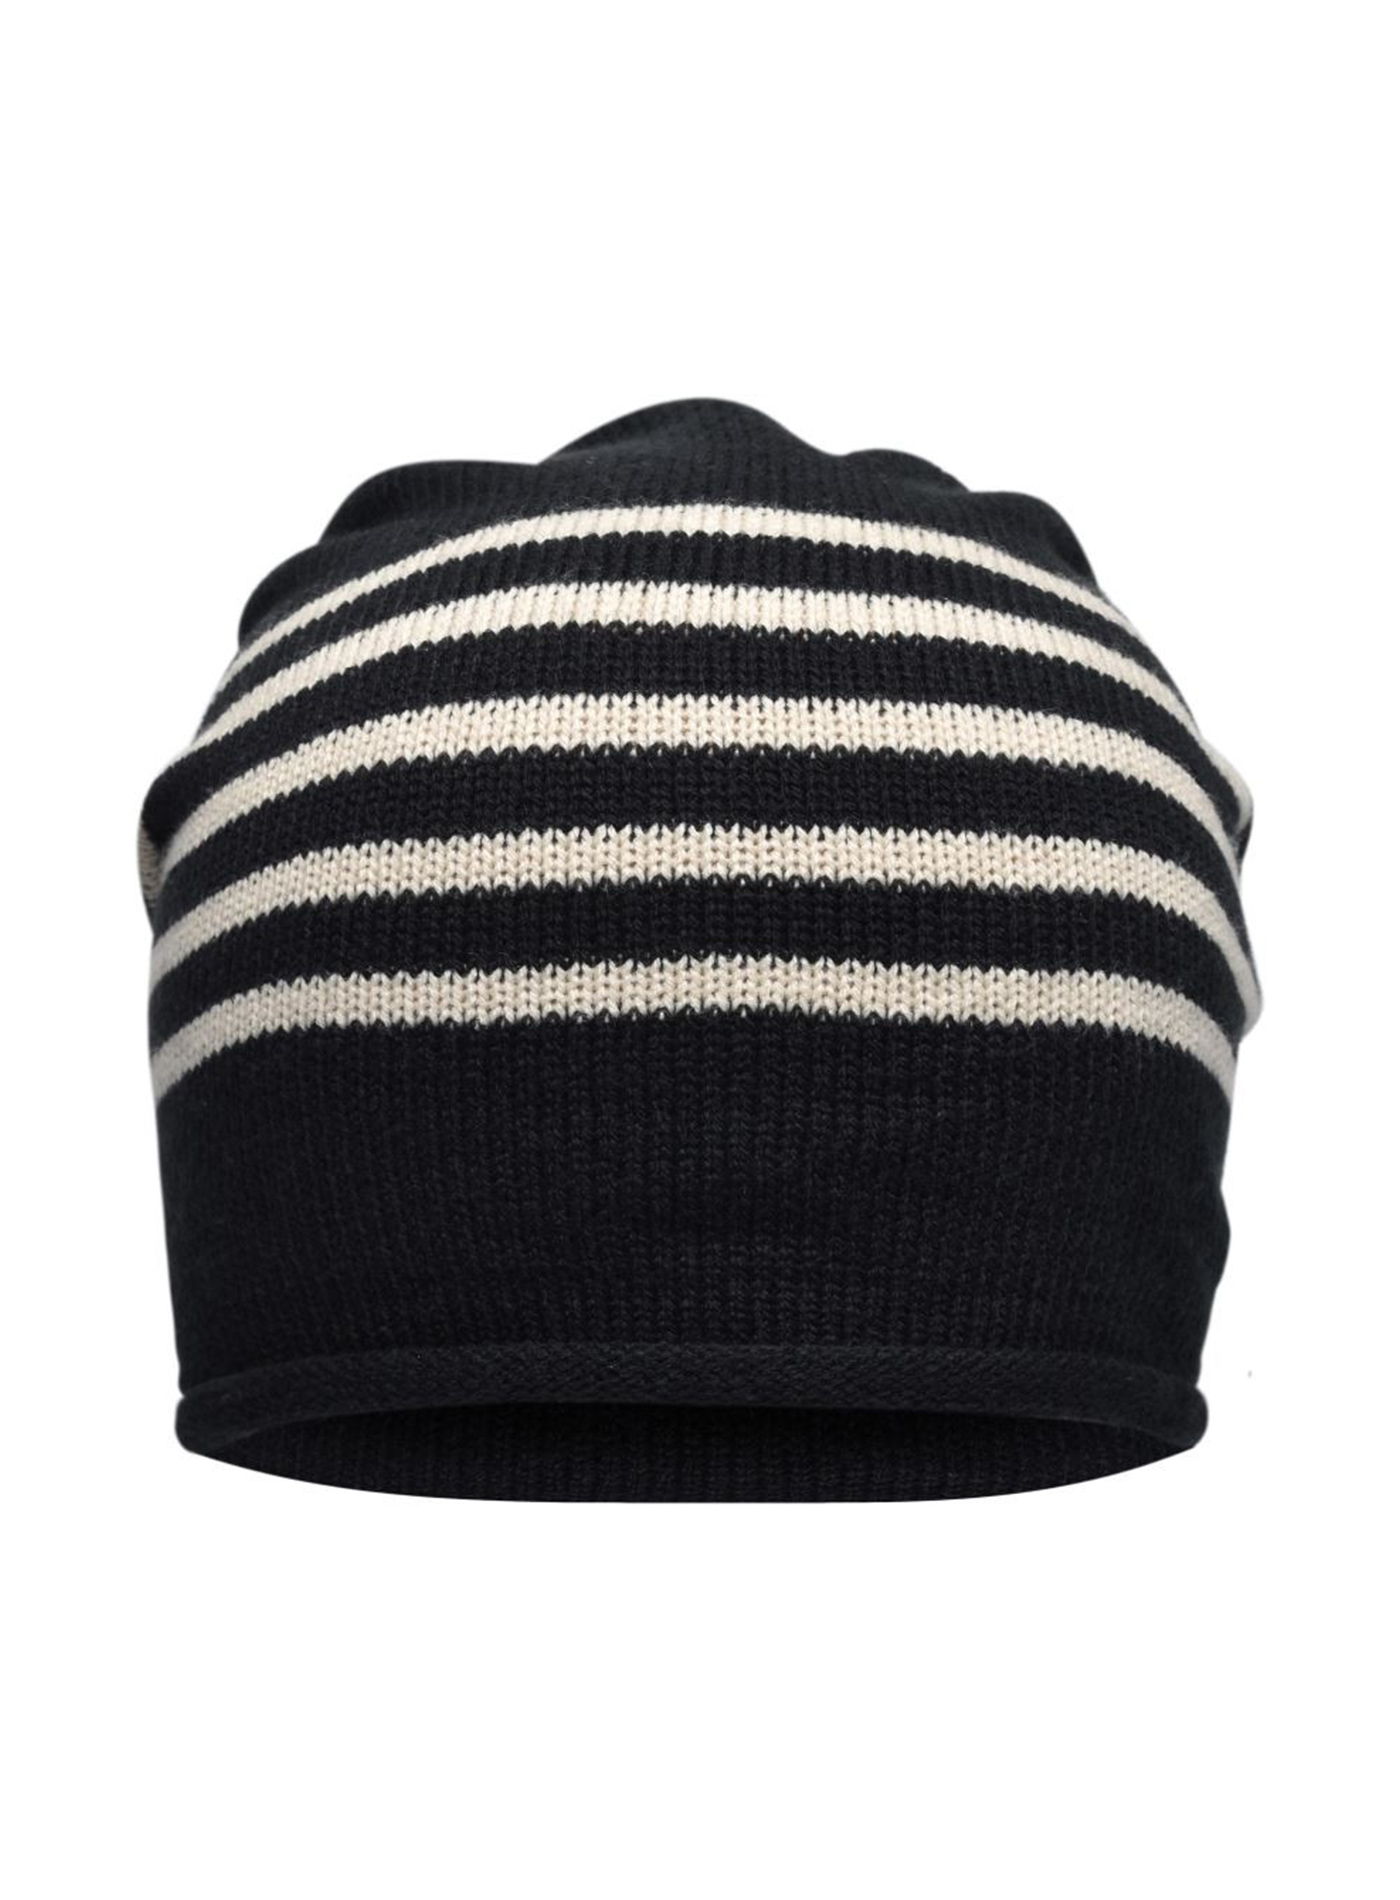 Pletená čepice s kontrastními pruhy - Béžová a černá univerzal